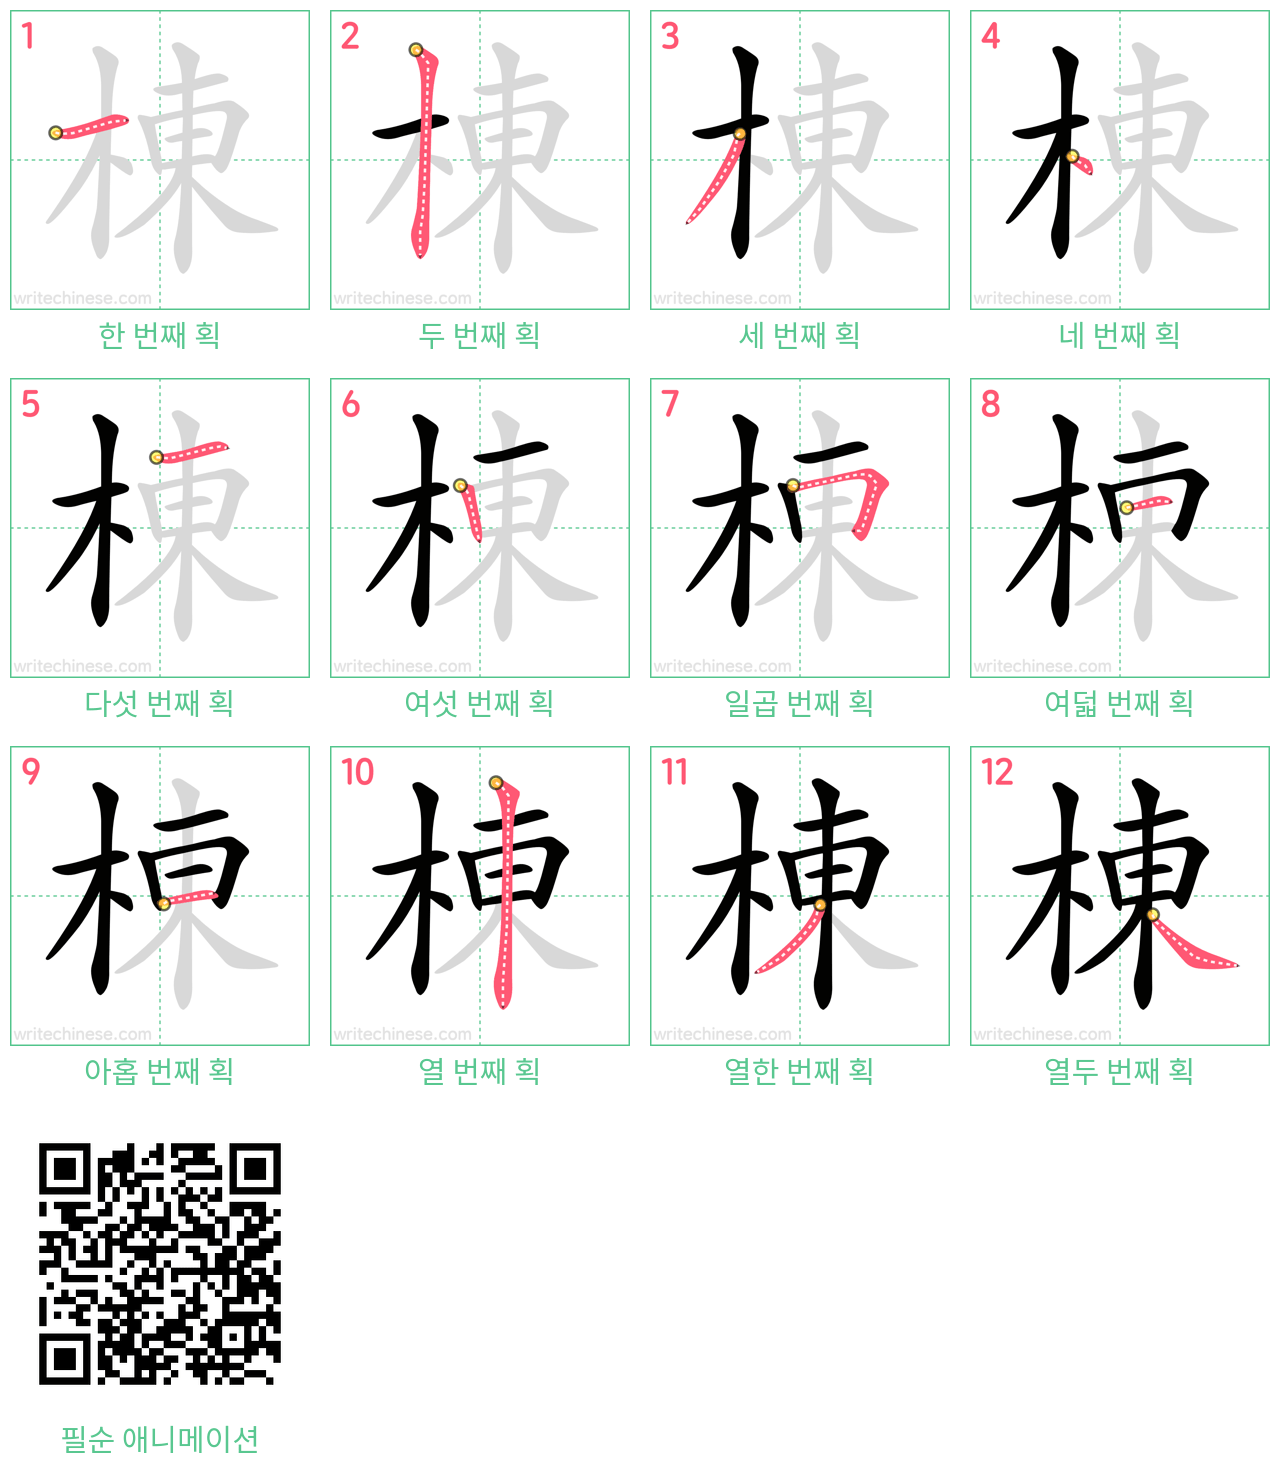 棟 step-by-step stroke order diagrams